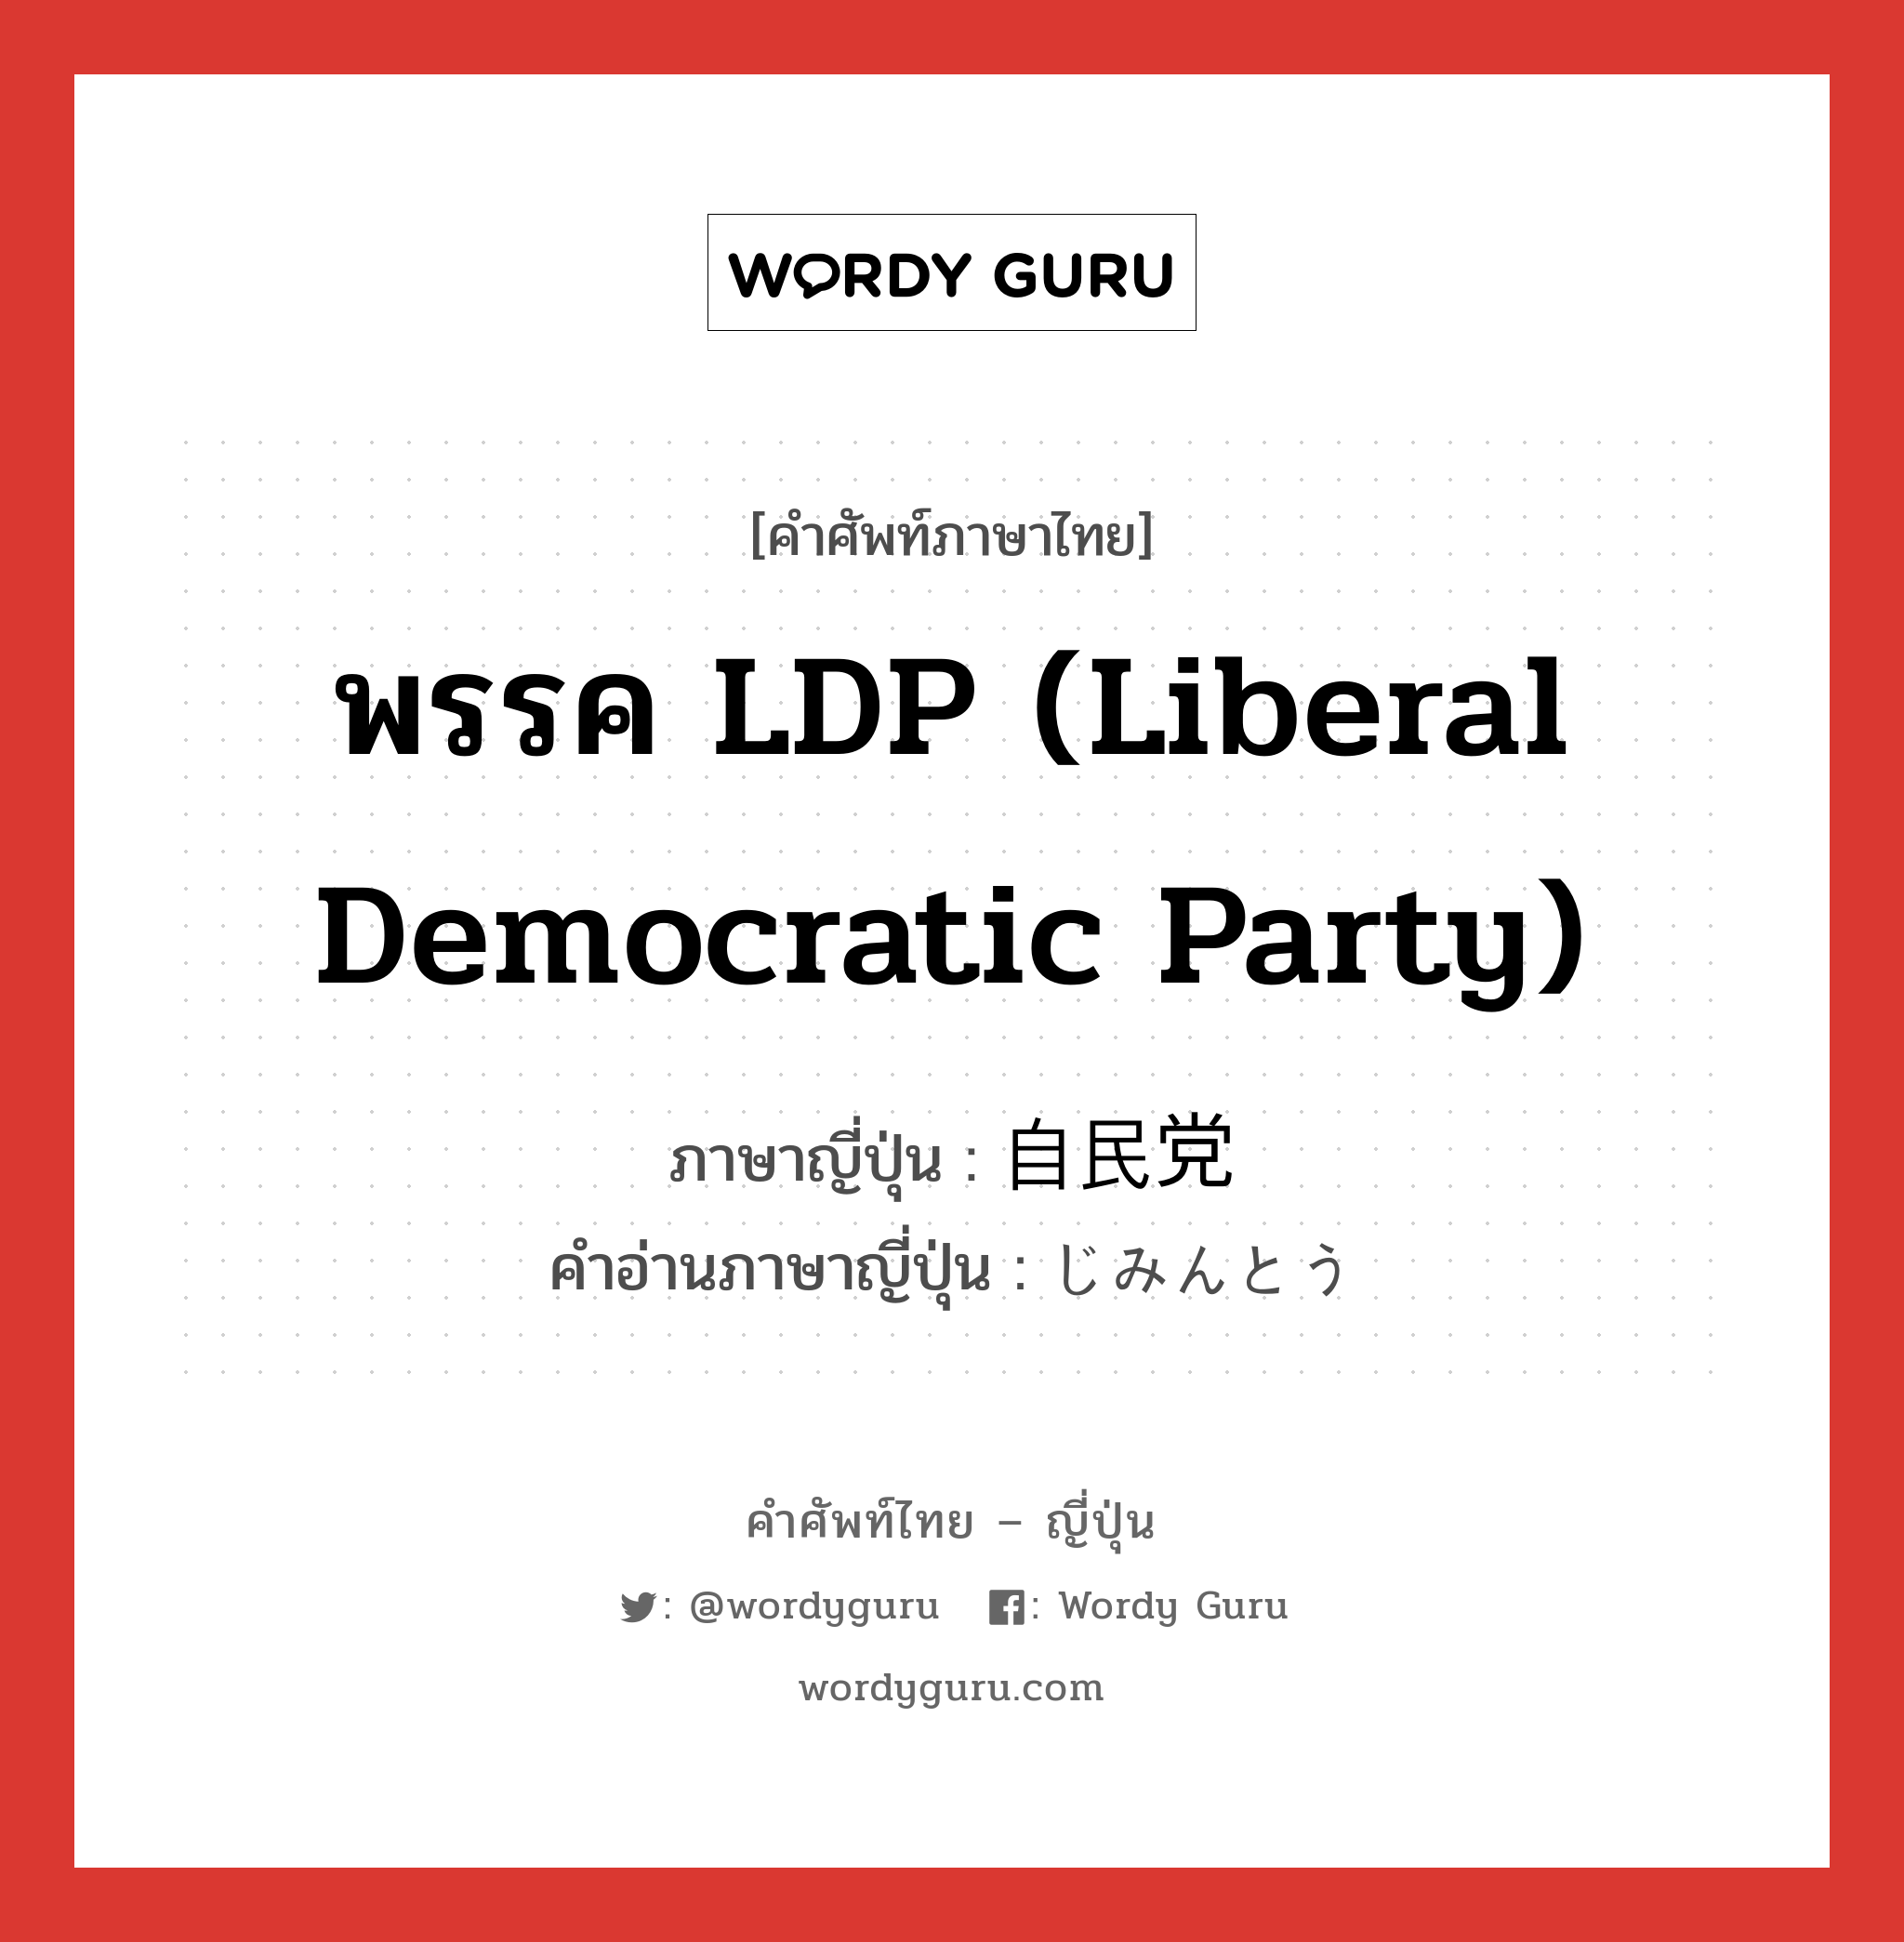 自民党 ภาษาไทย?, คำศัพท์ภาษาไทย - ญี่ปุ่น 自民党 ภาษาญี่ปุ่น พรรค LDP (Liberal Democratic Party) คำอ่านภาษาญี่ปุ่น じみんとう หมวด n หมวด n